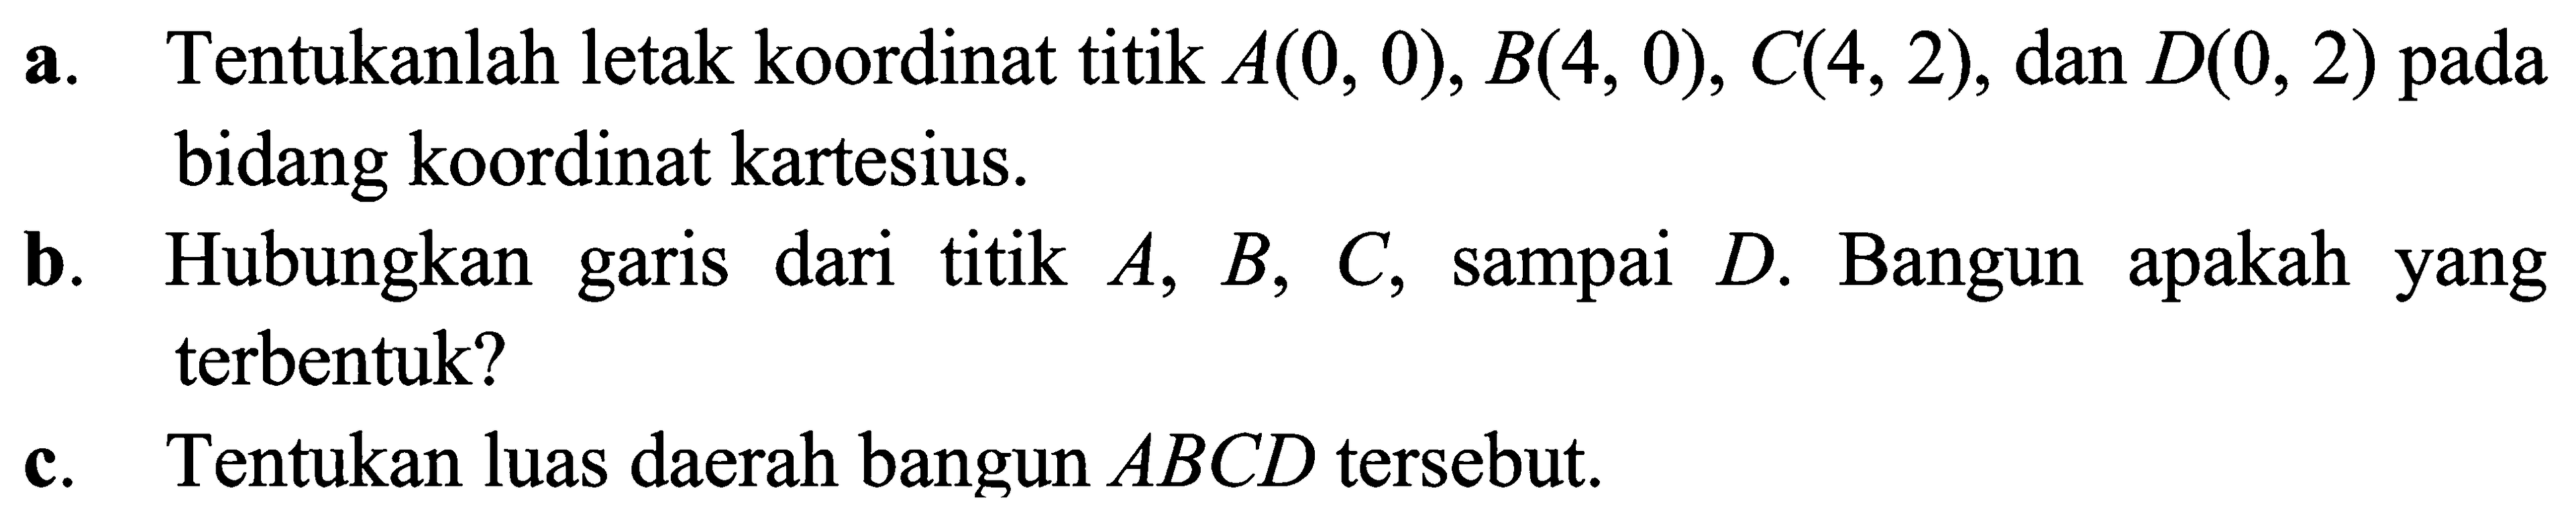 a. Tentukanlah letak koordinat titik A(0,0), B(4,0), C(4,2), dan D(0, 2) pada bidang koordinat kartesius. b. Hubungkan garis dari titik A, B, C, sampai D. Bangun apakah yang terbentuk? c. Tentukan luas daerah bangun ABCD tersebut.